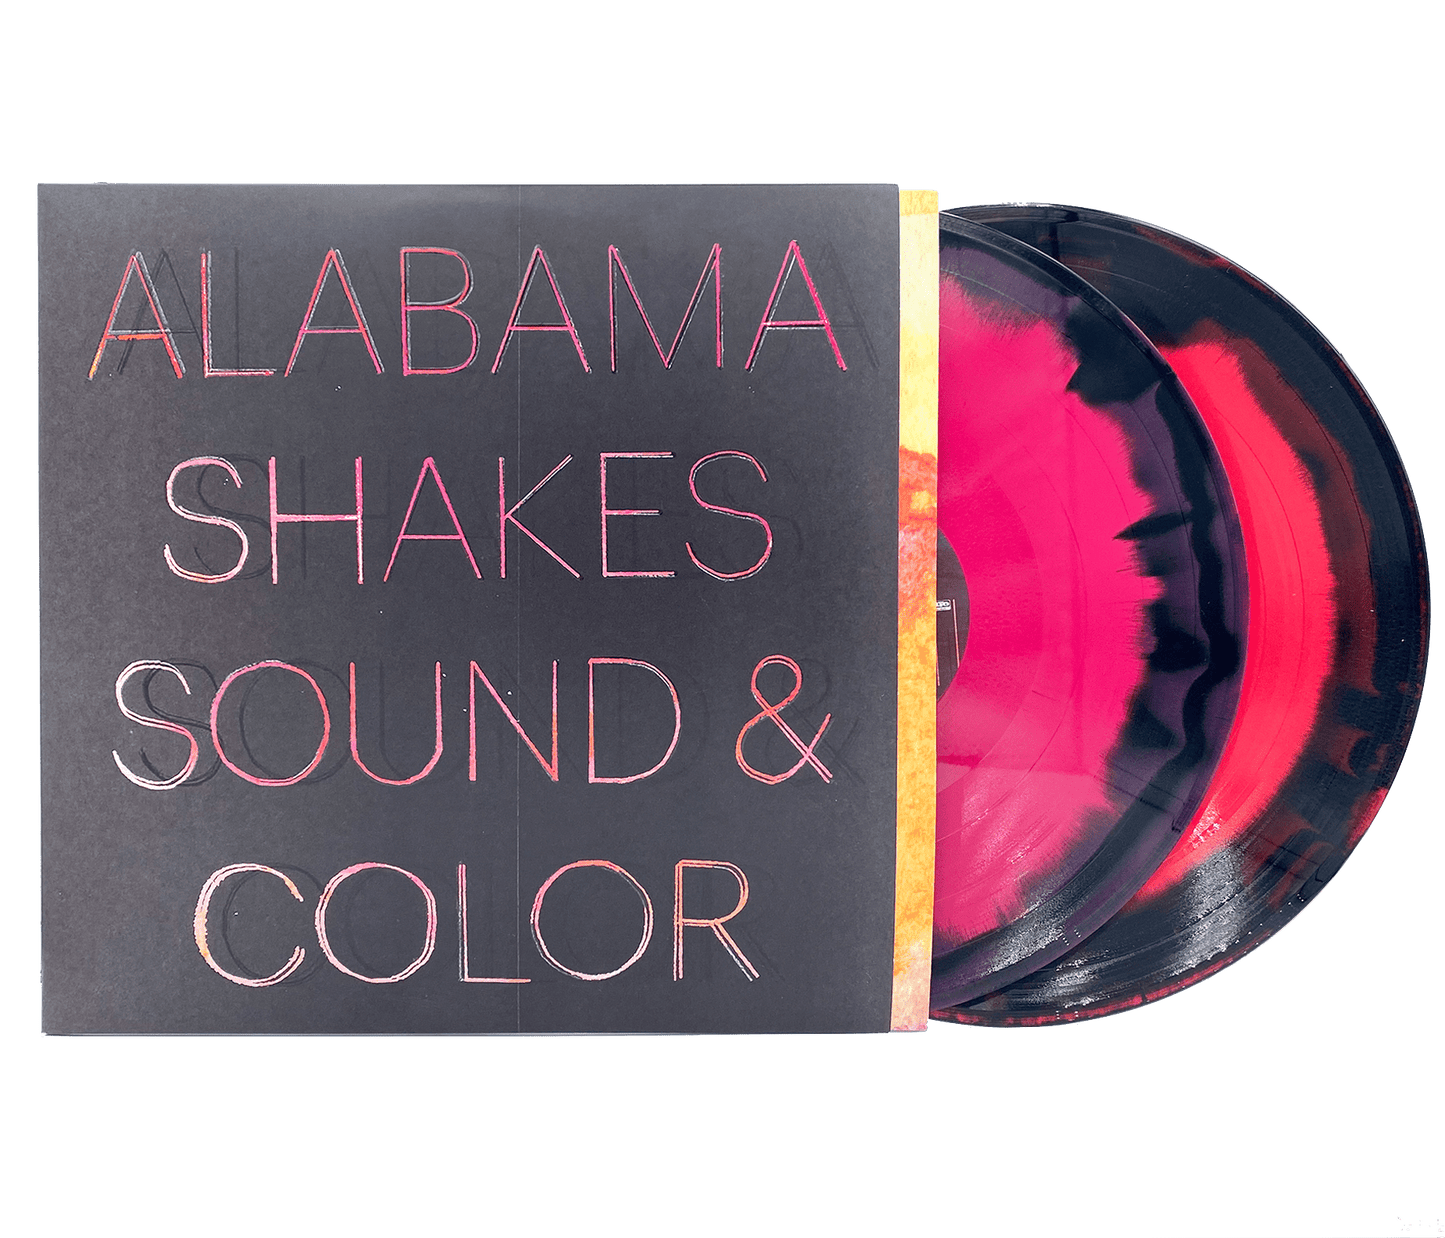 ALABAMA SHAKES - SOUND & COLOR - DELUXE EDITION - 2 LP - PINK, BLACK & MAGENTA COLOR - VINYL LP